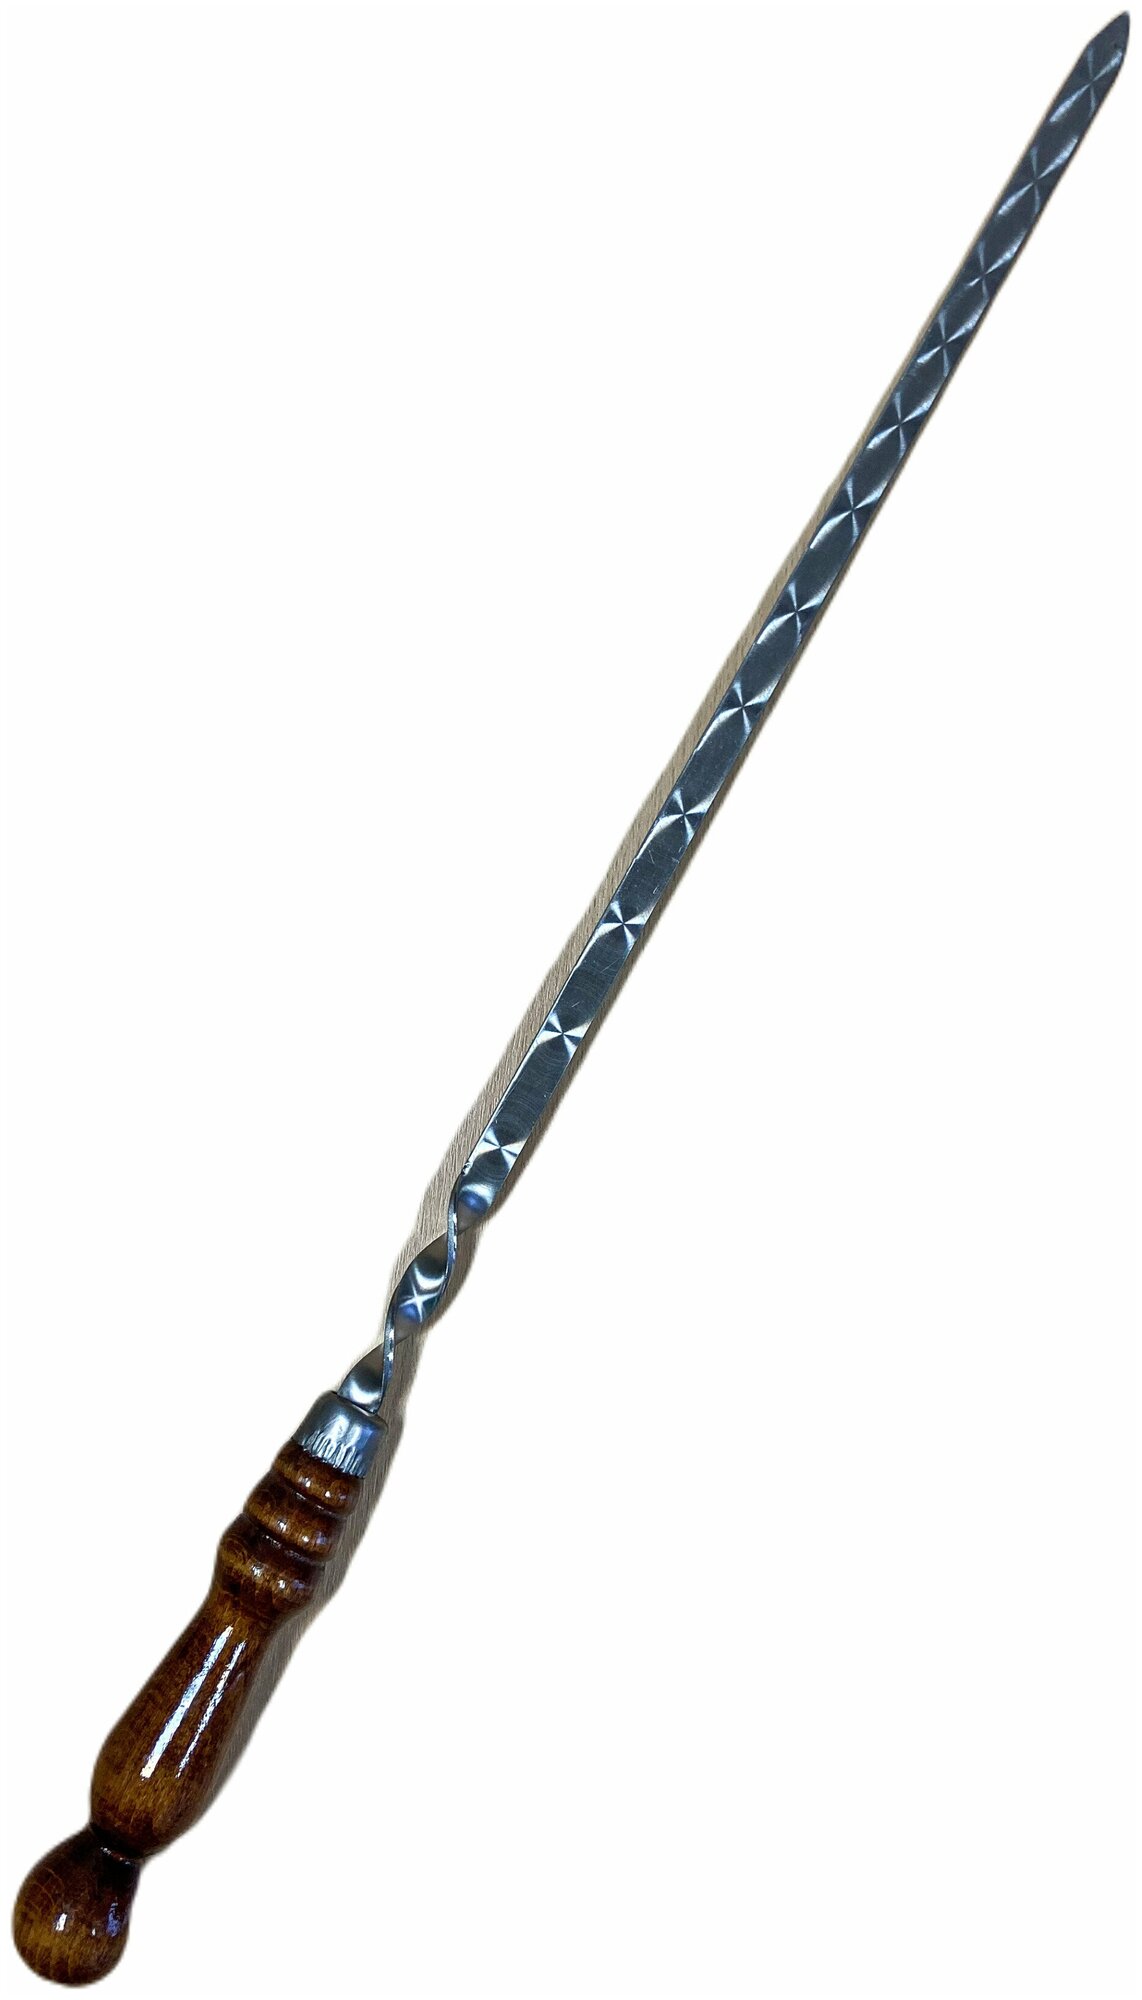 Шампуры для люля набор 8 45см с деревянной ручкой из нержавеющей стали ширина 20мм